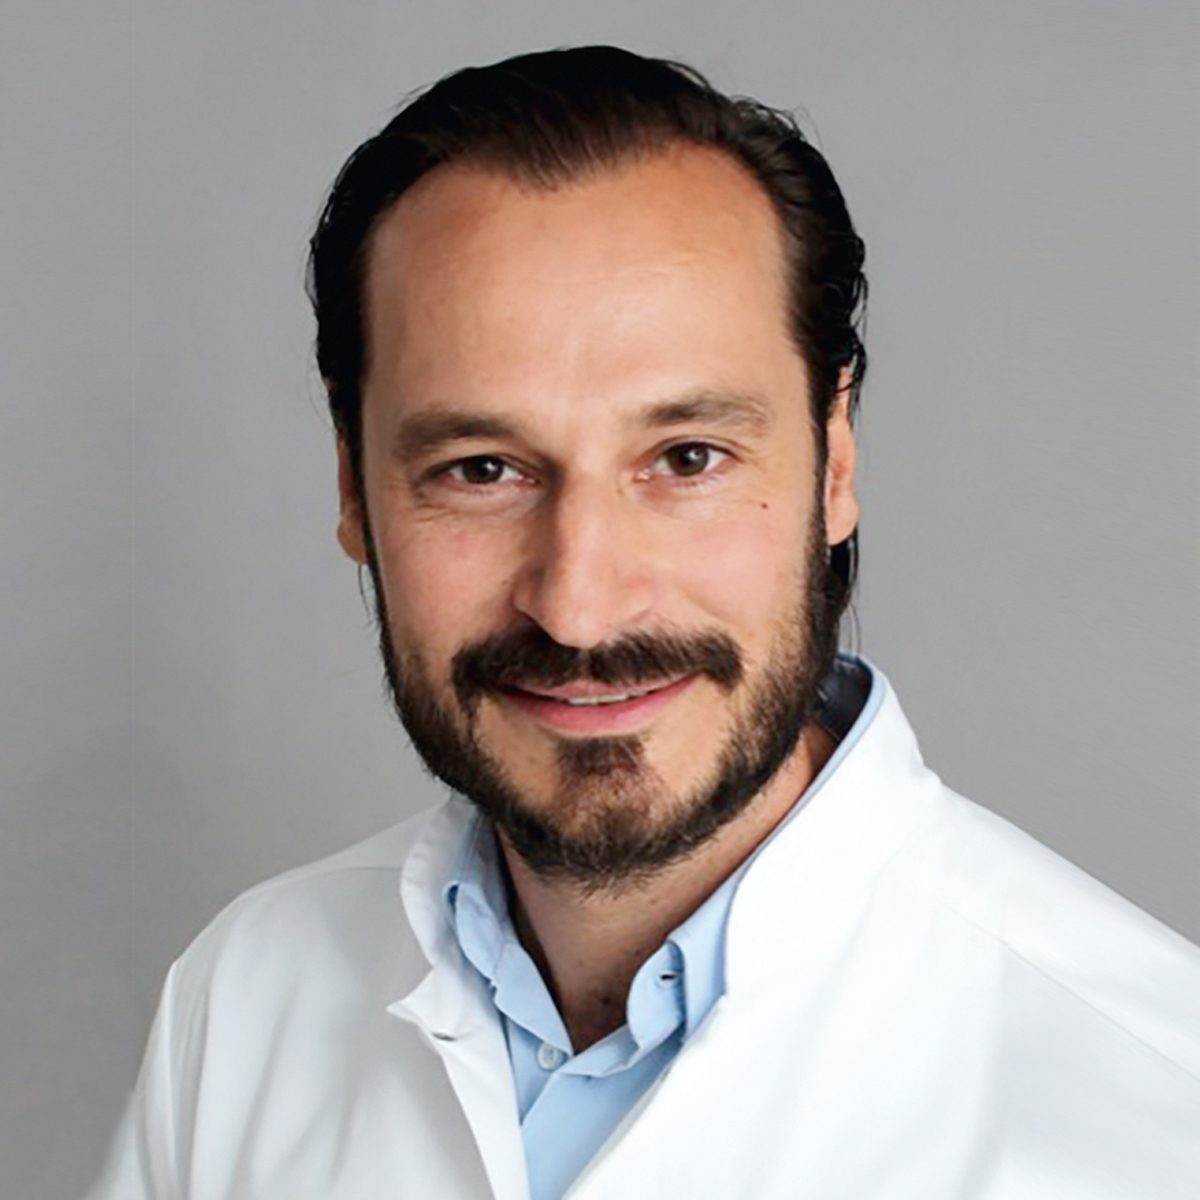 PD Dr. med. Marco Ezechieli